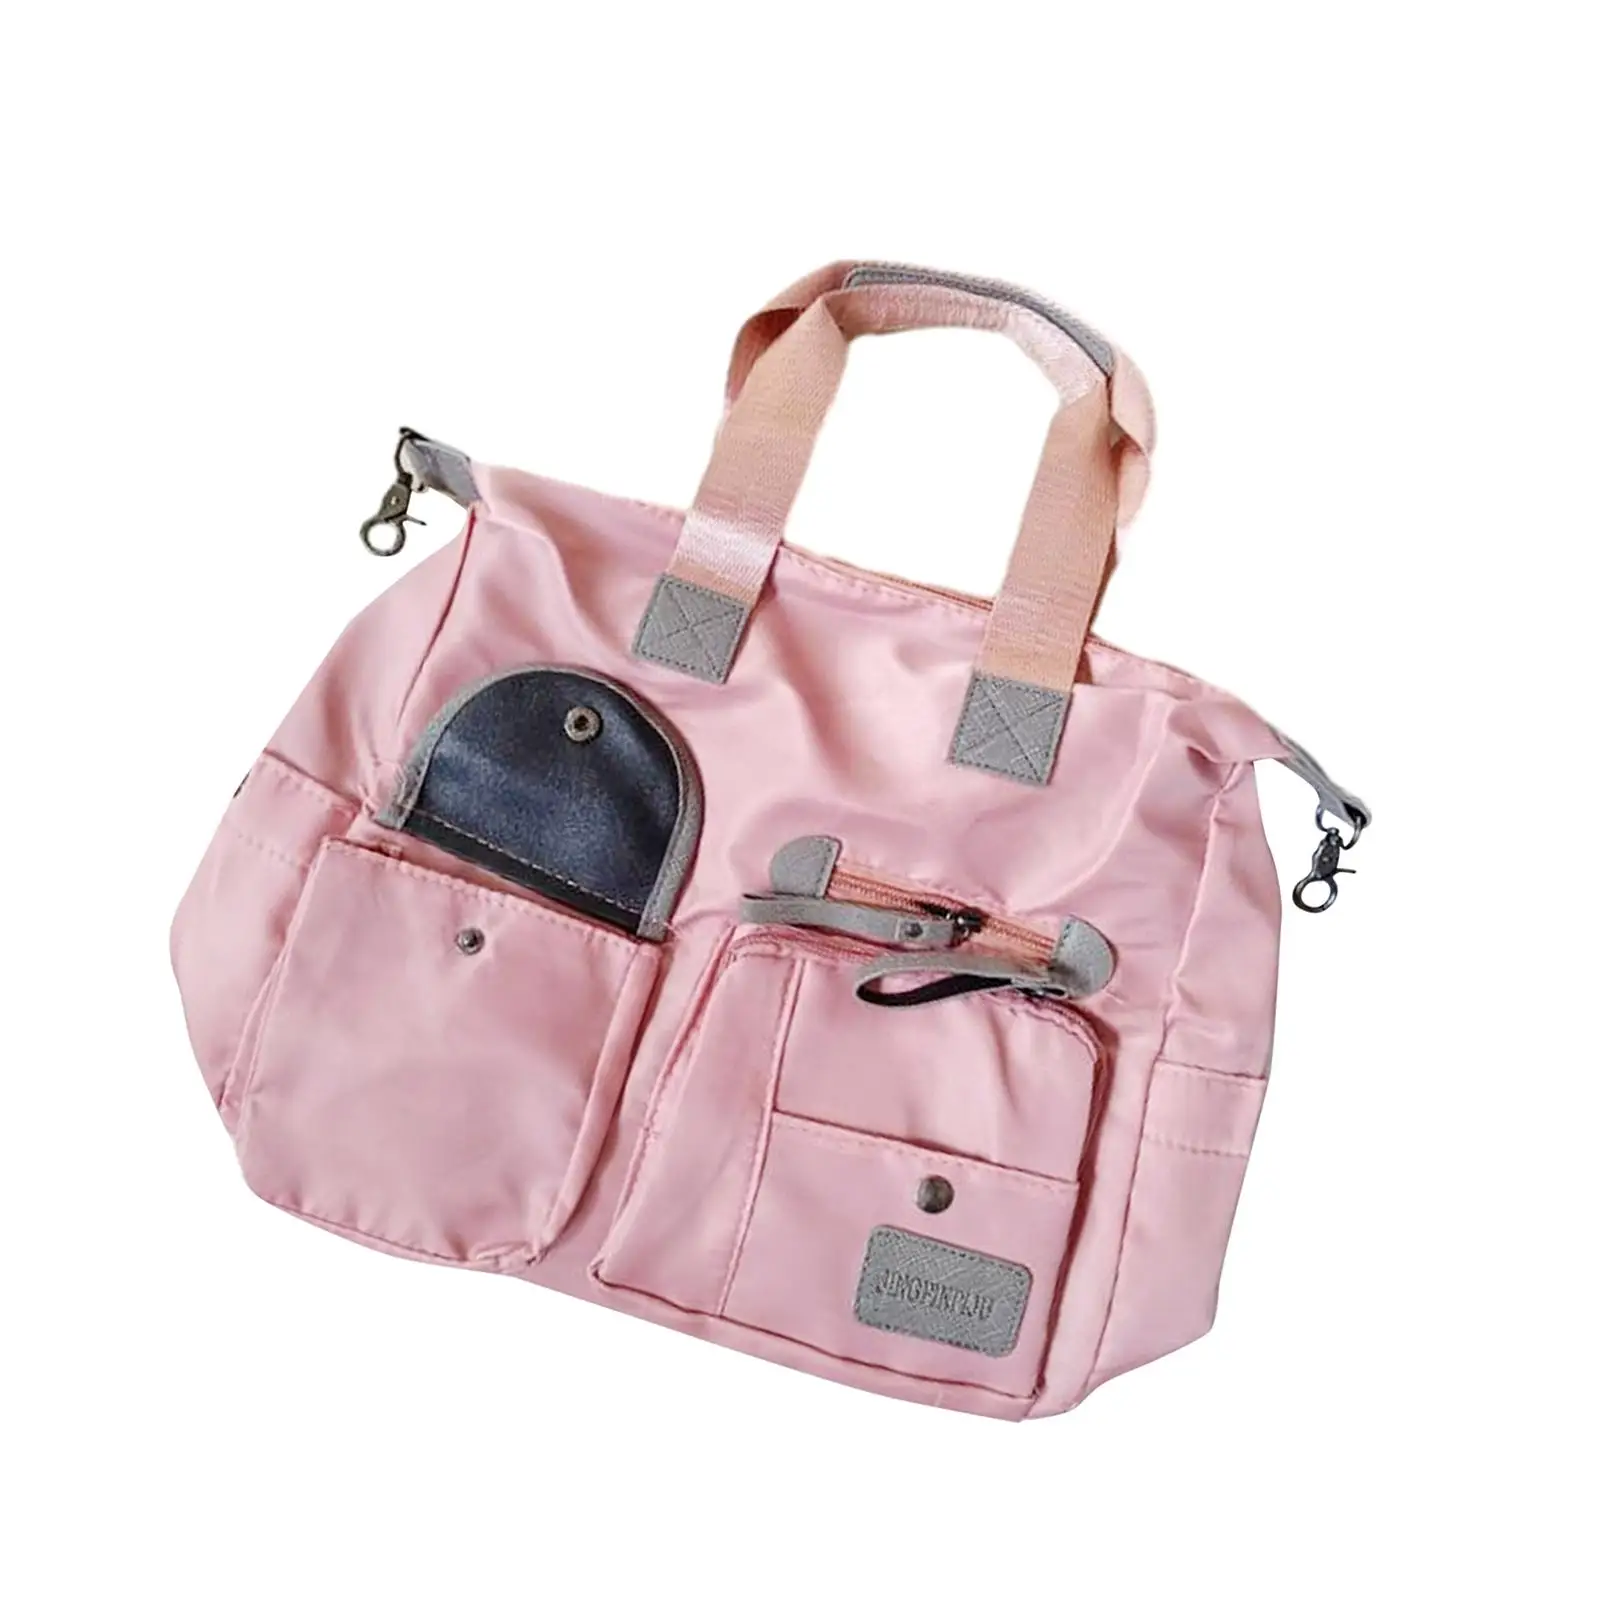 Diaper Bag Tote Bags for Women Mommy Maternity Nursing Bag Travel Messenger Satchel Crossbody Bag Mommy Baby Bag Handbag